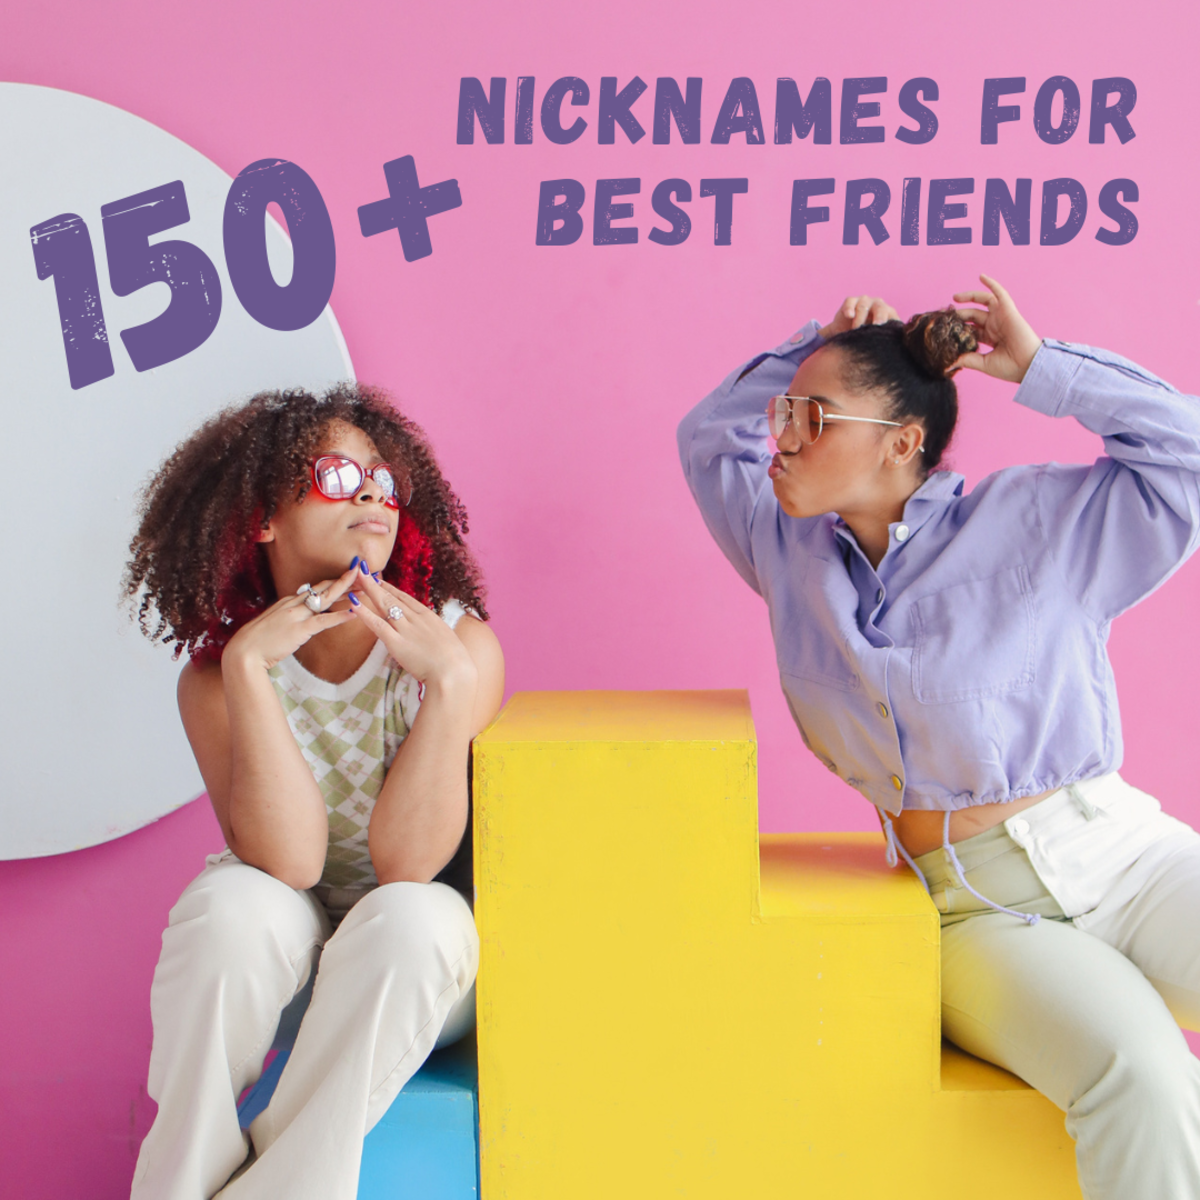 150+ Nicknames for Best Friends